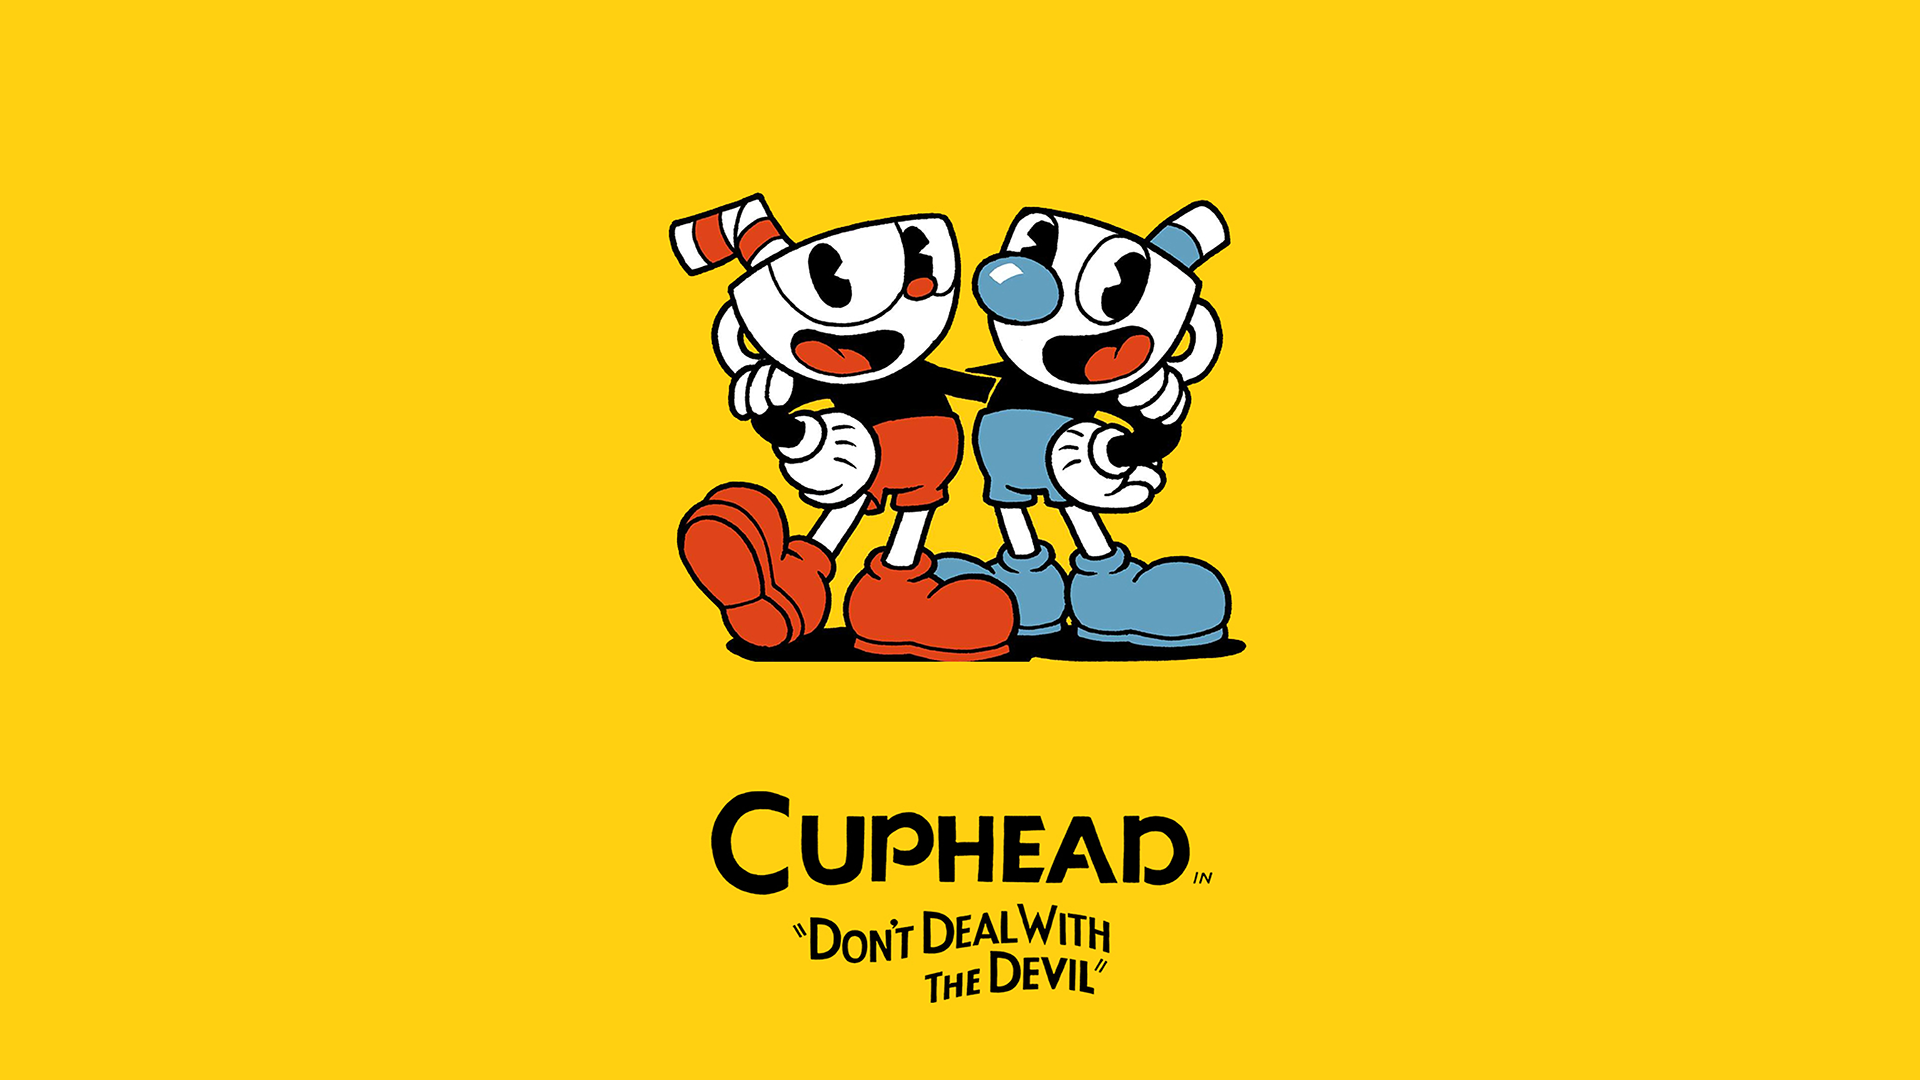 cuphead-ya-ha-vendido-mas-dos-millones-videojuegos-pc-xbox-one-frikigamers.com